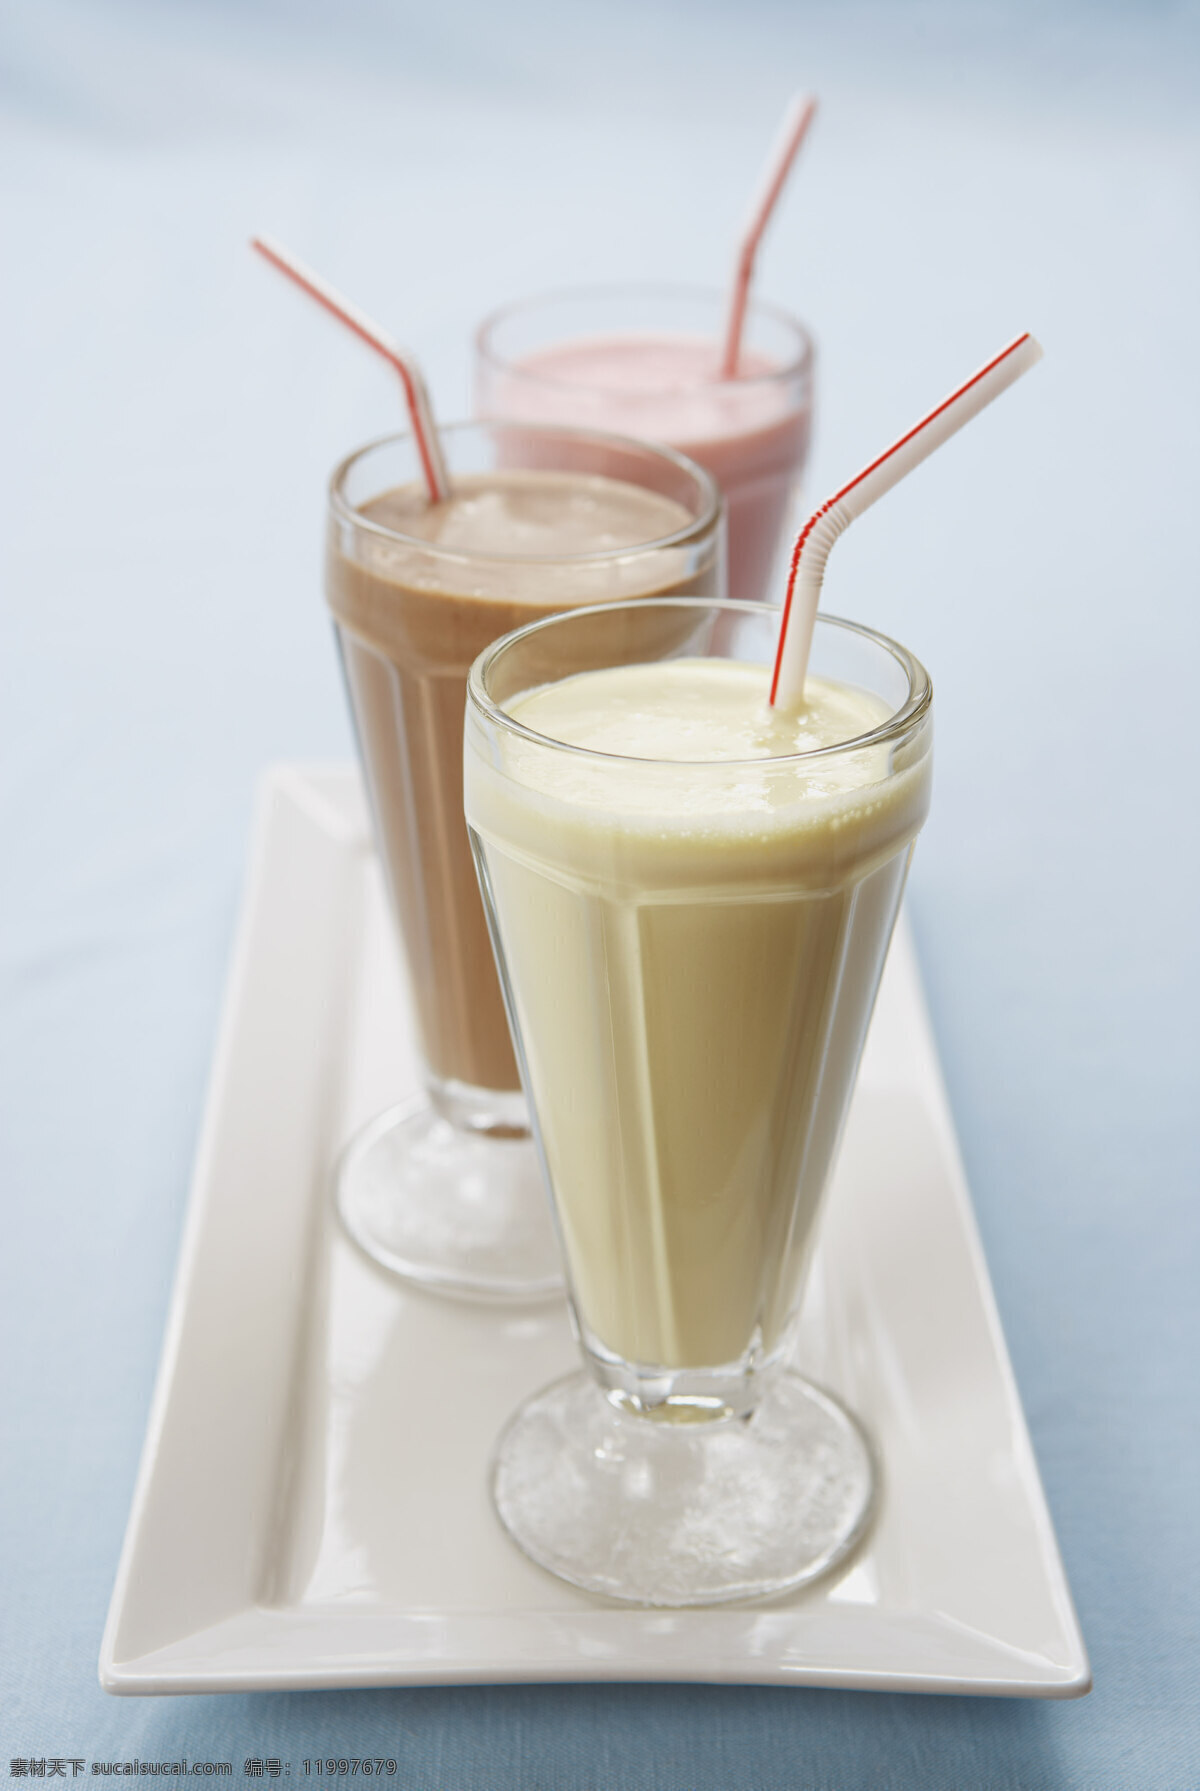 奶茶 甜品 饮品 饮料 背景 素材图片 类 餐饮美食